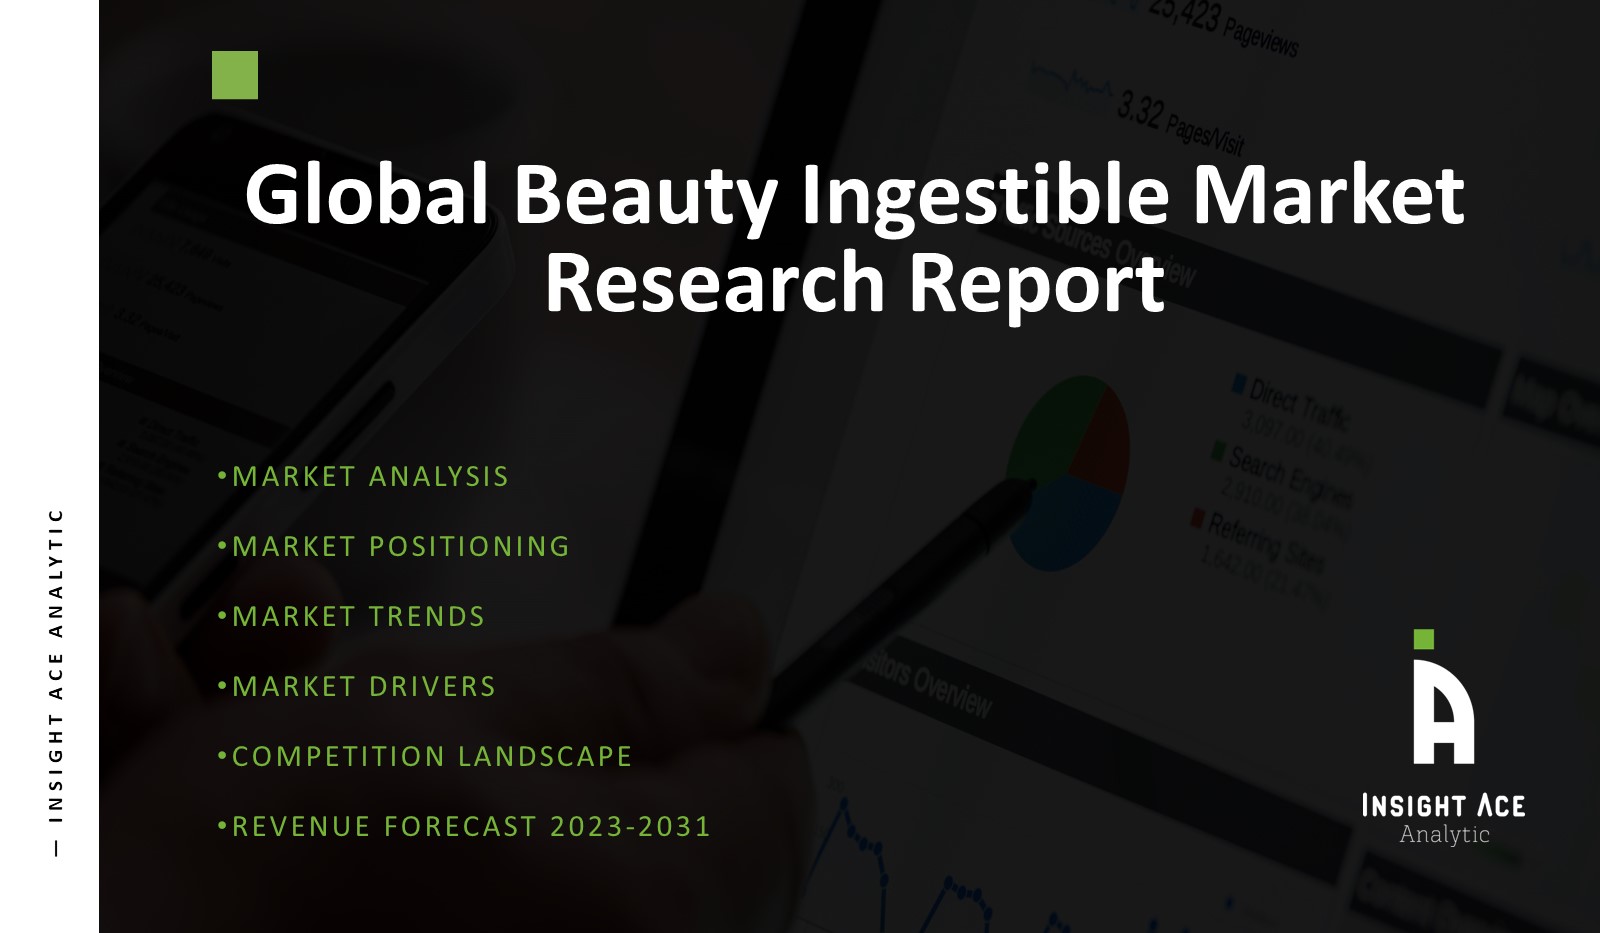 Global Beauty Ingestible Market